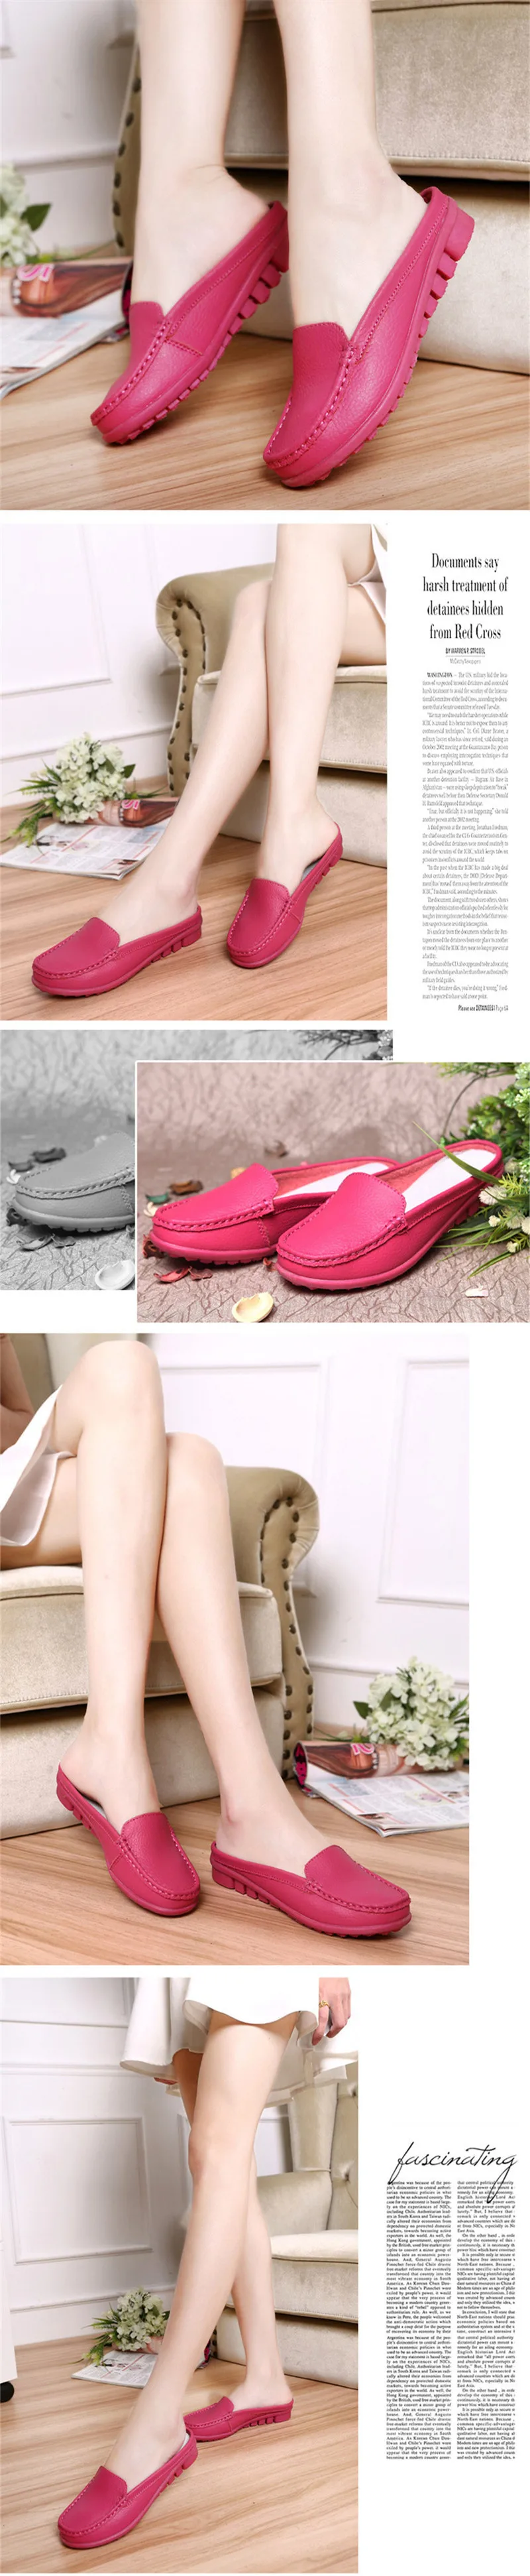 BEYARNE/Популярные летние шлепанцы из натуральной кожи; женская обувь на плоской подошве; босоножки на низком каблуке; удобная обувь разных цветов для женщин